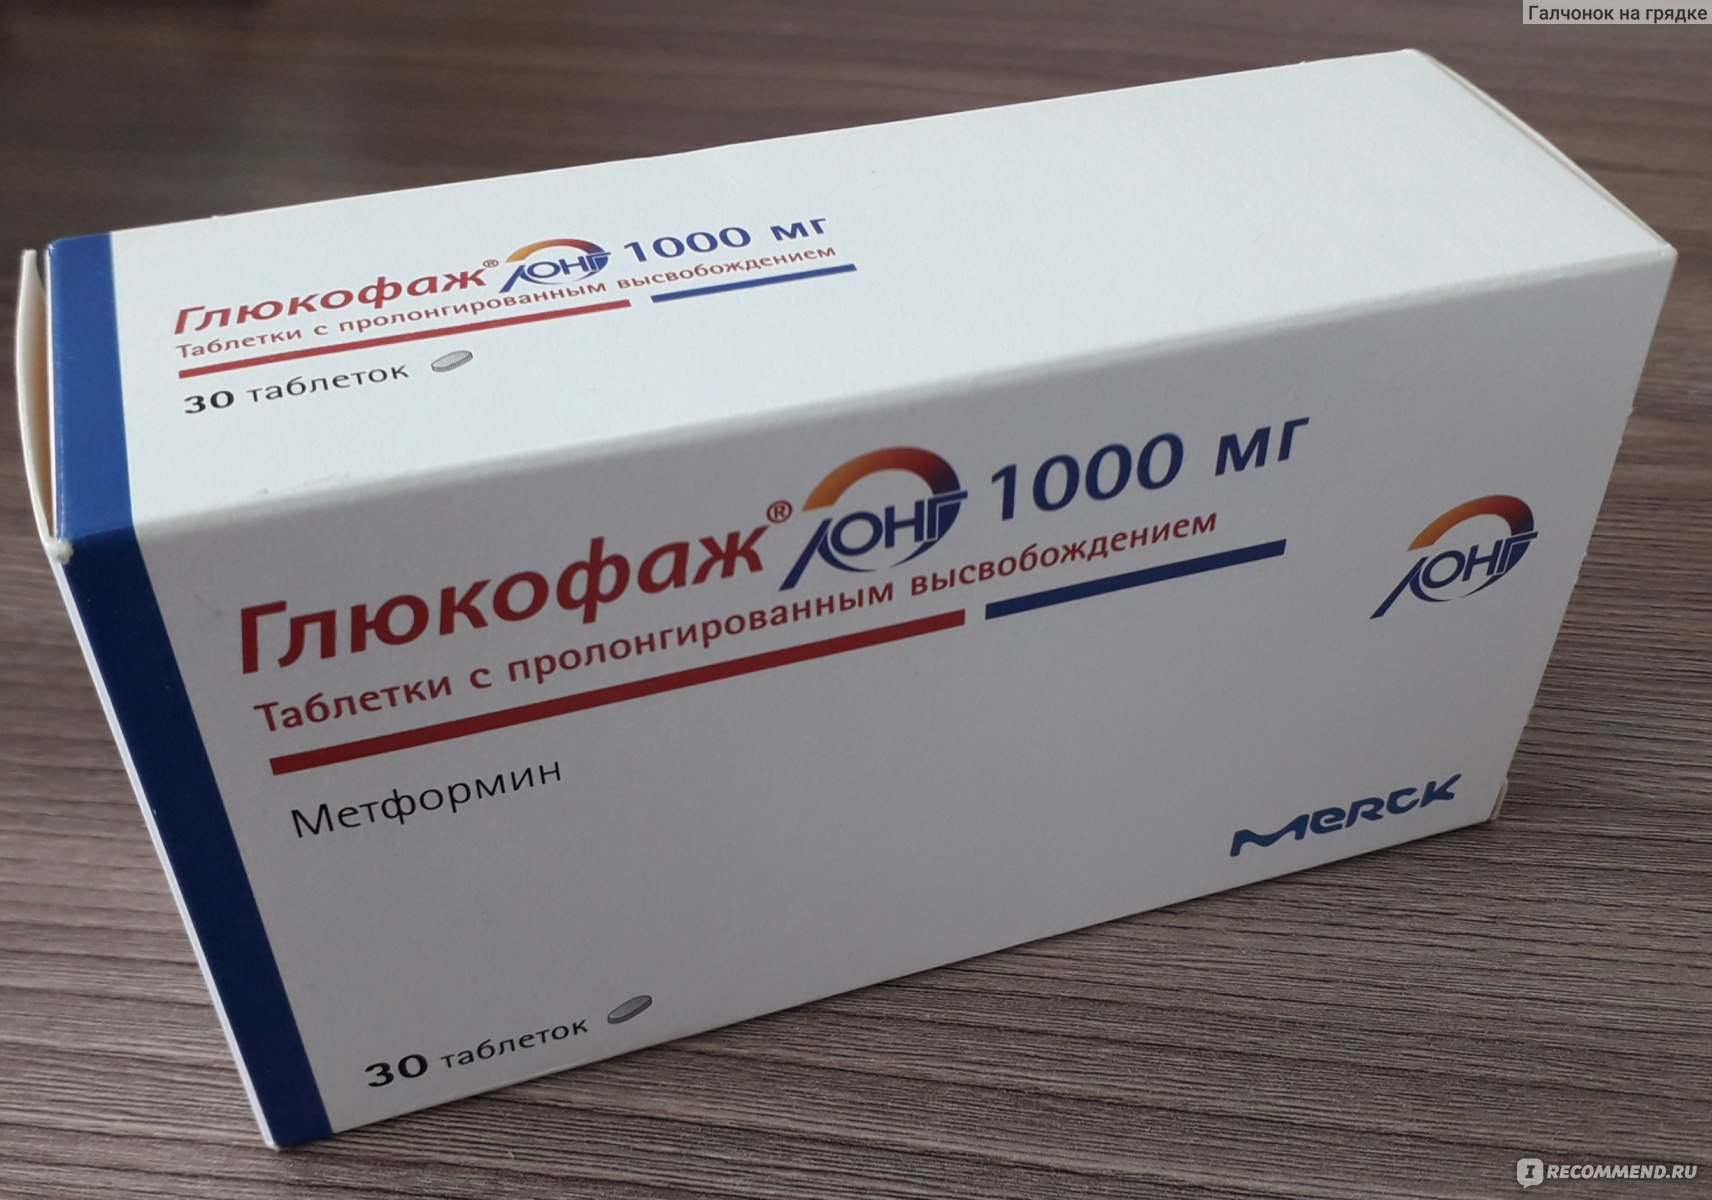 Merck Serono Глюкофаж / 1000 мг - «Неоднозначные впечатления от приема .